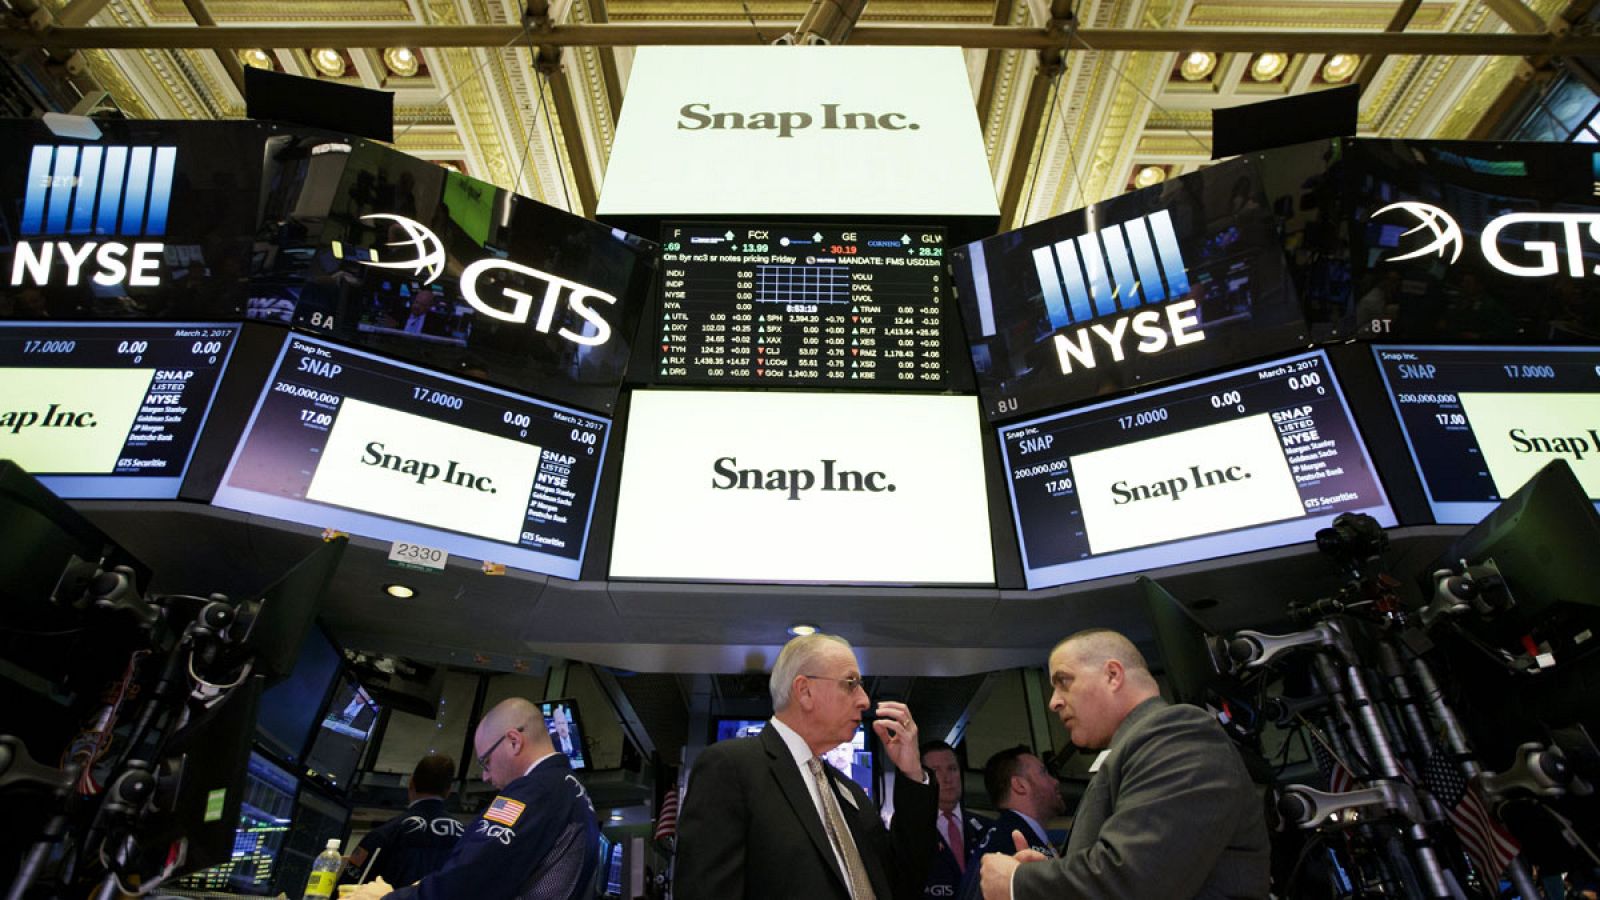 Vista del logo de Snap, la empresa matriz de Snapchat, antes de su oferta pública de venta en las pantallas de la Bolsa de Nueva York, Estados Unidos